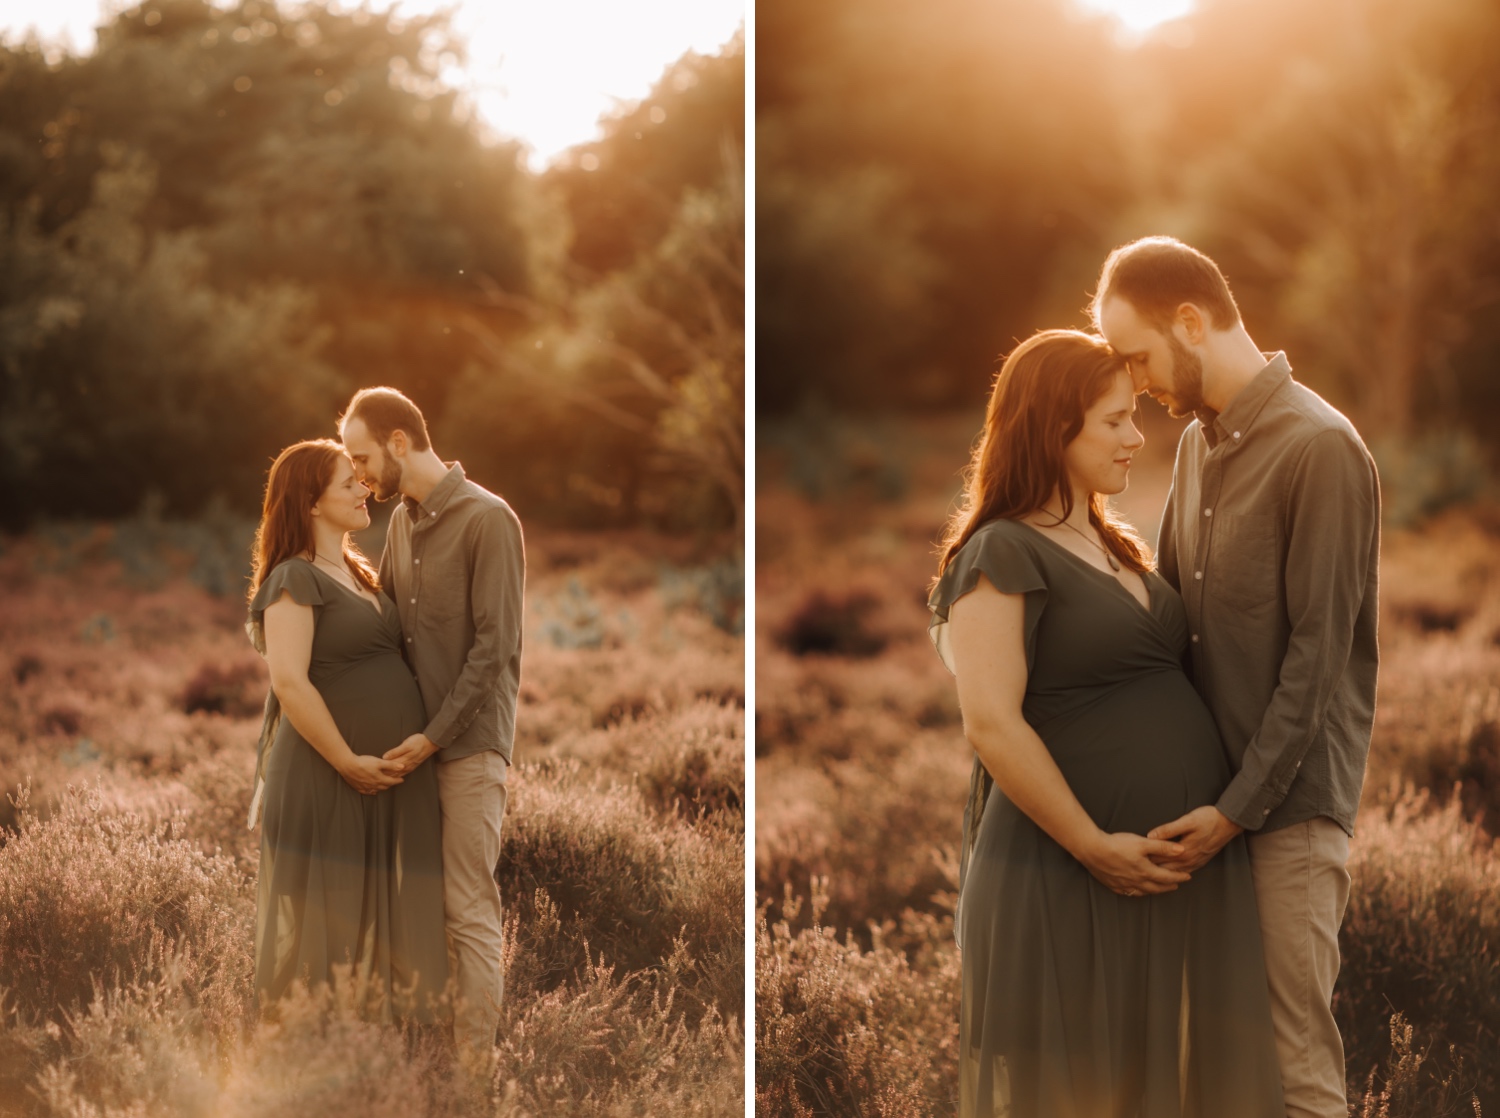 gezinsfotograaf Limburg - close-up portretten van verliefd koppel tijdens zwangerschapsshoot